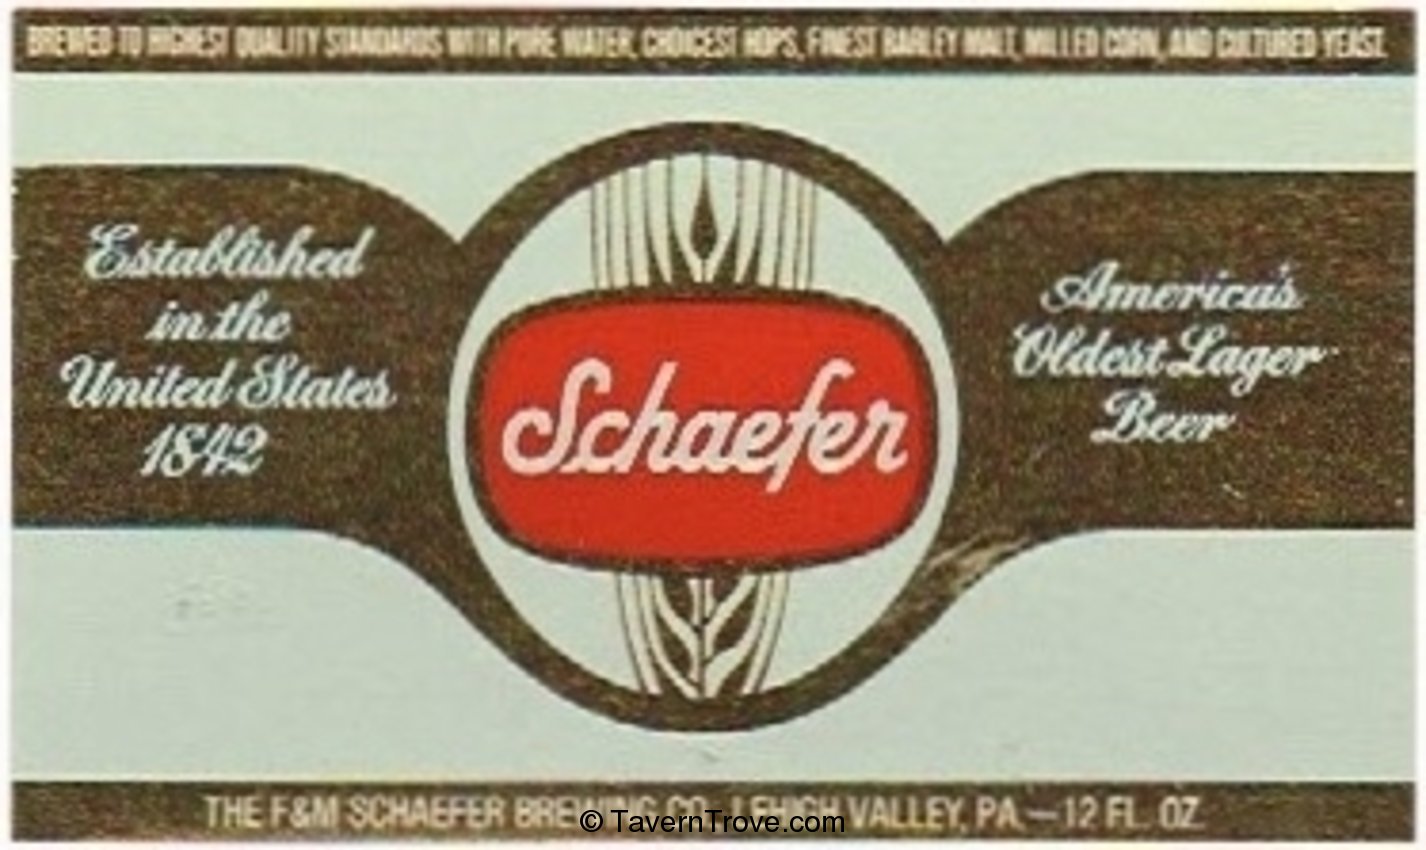 Schaefer Beer Tray Liner